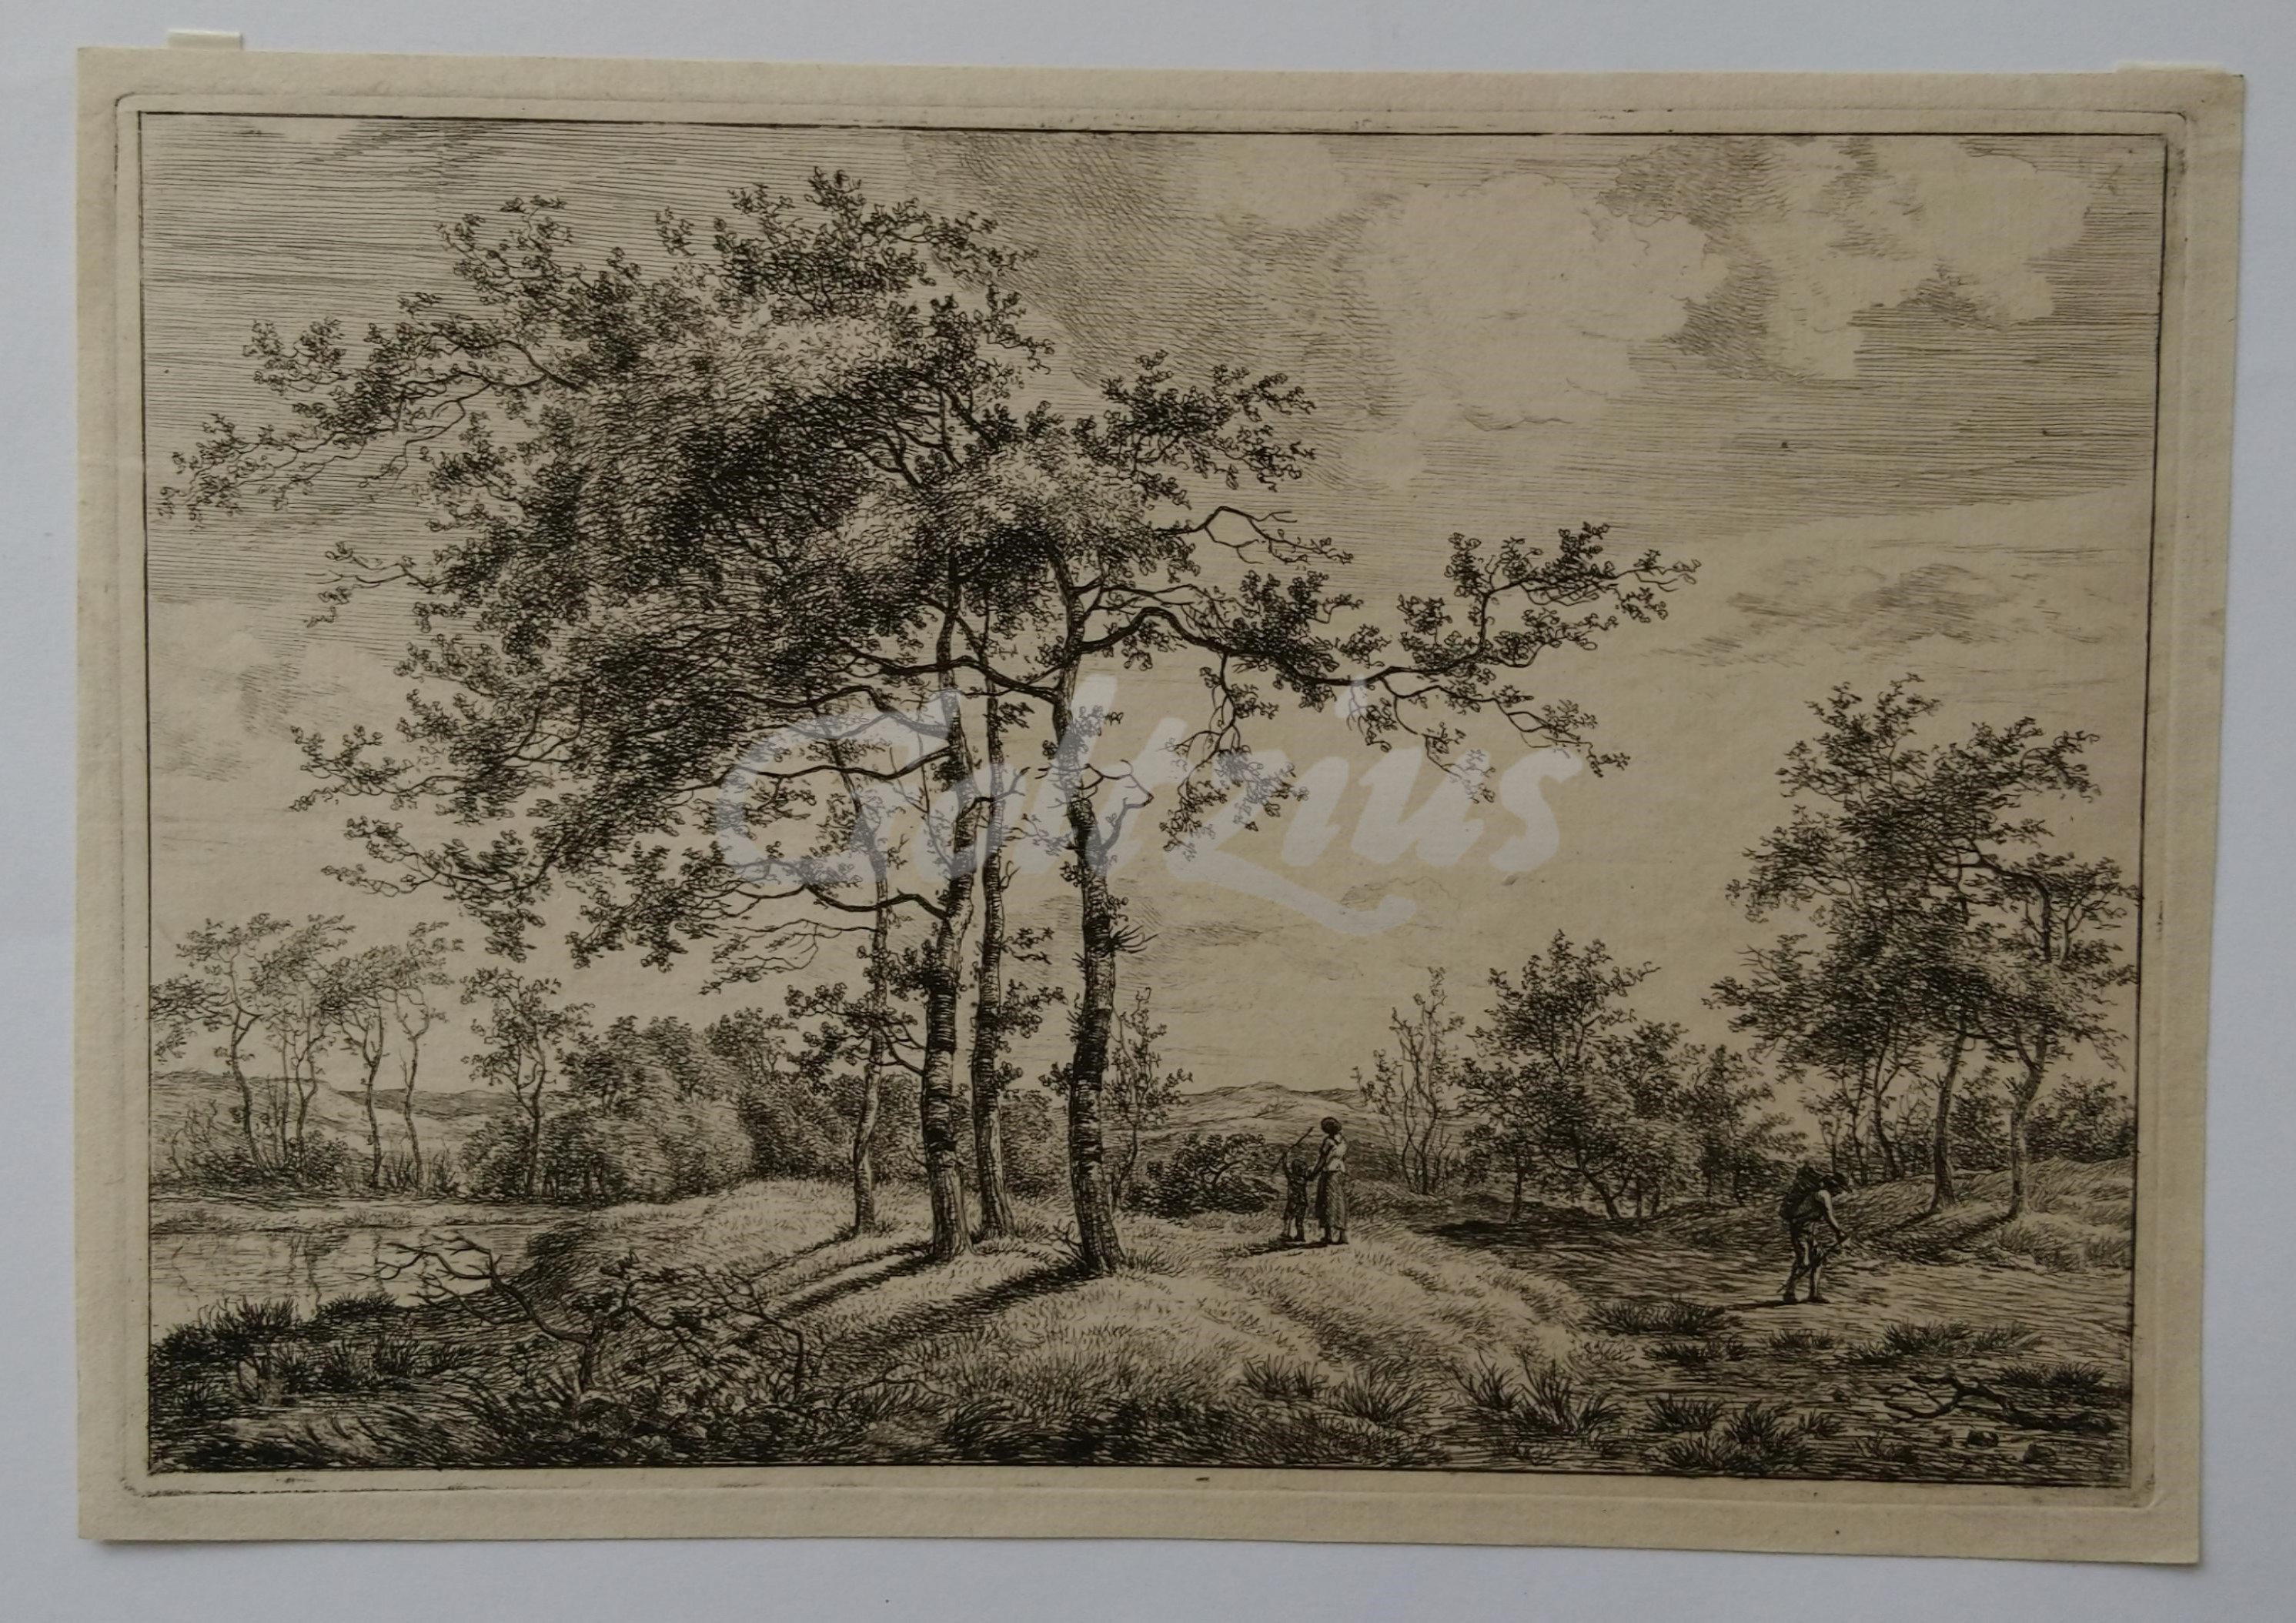 FOCK, HERMANUS (1766-1822), Landscape with slender trees